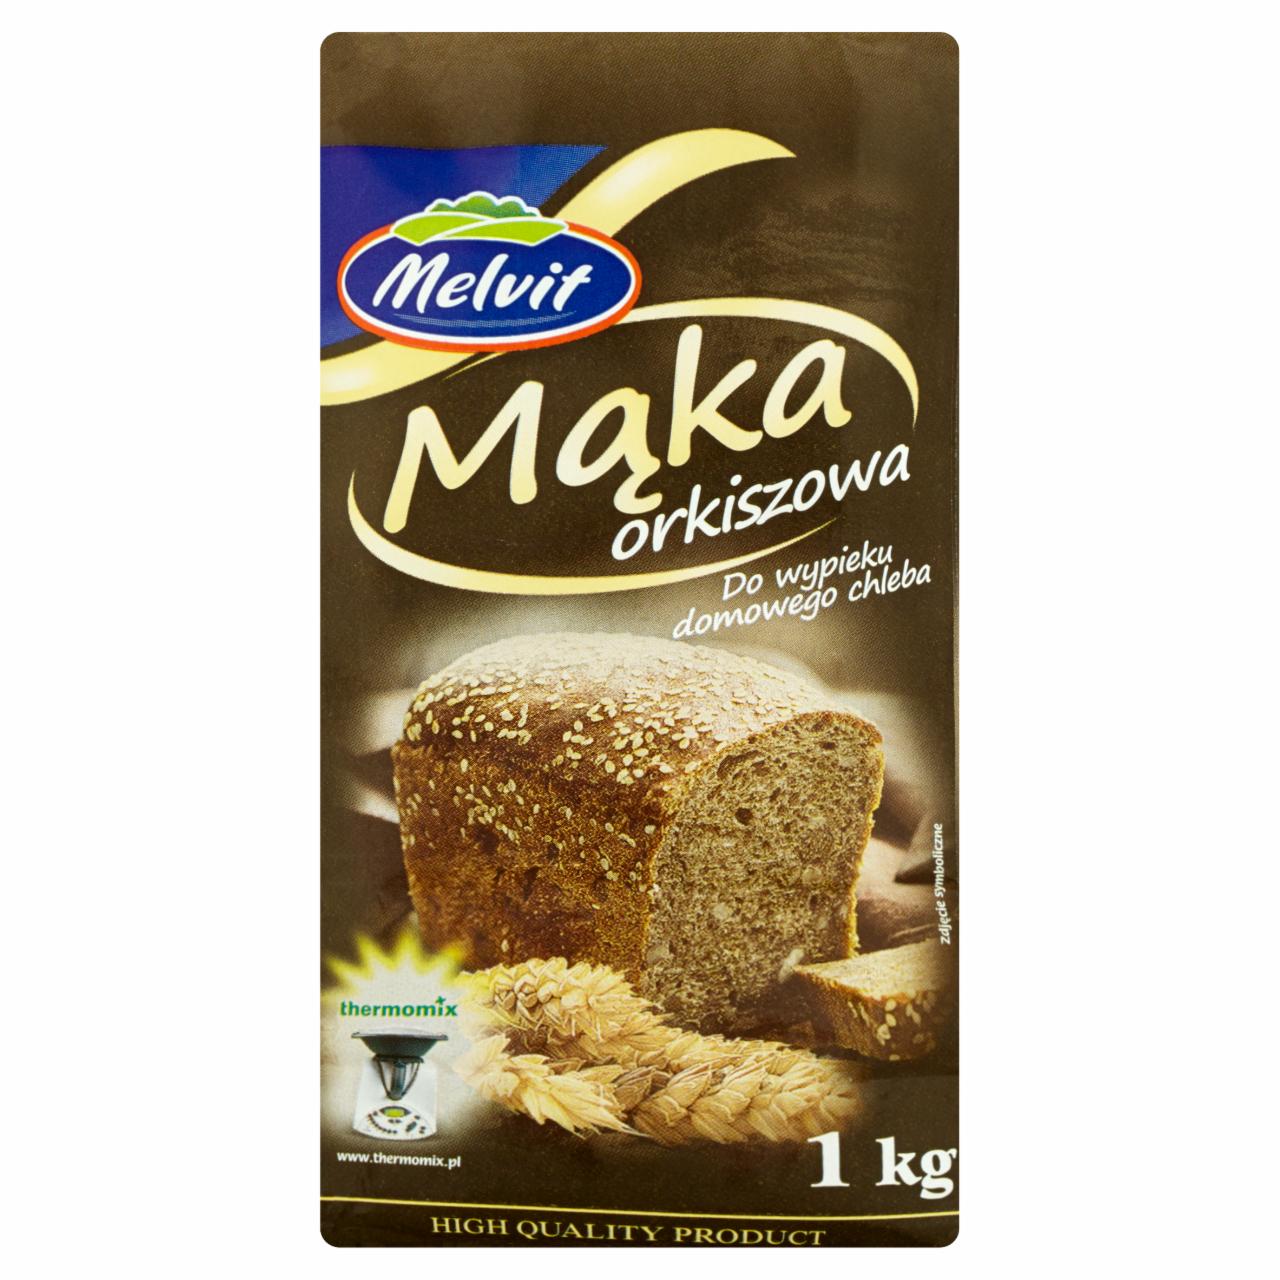 Zdjęcia - Melvit Mąka orkiszowa do wypieku domowego chleba 1 kg